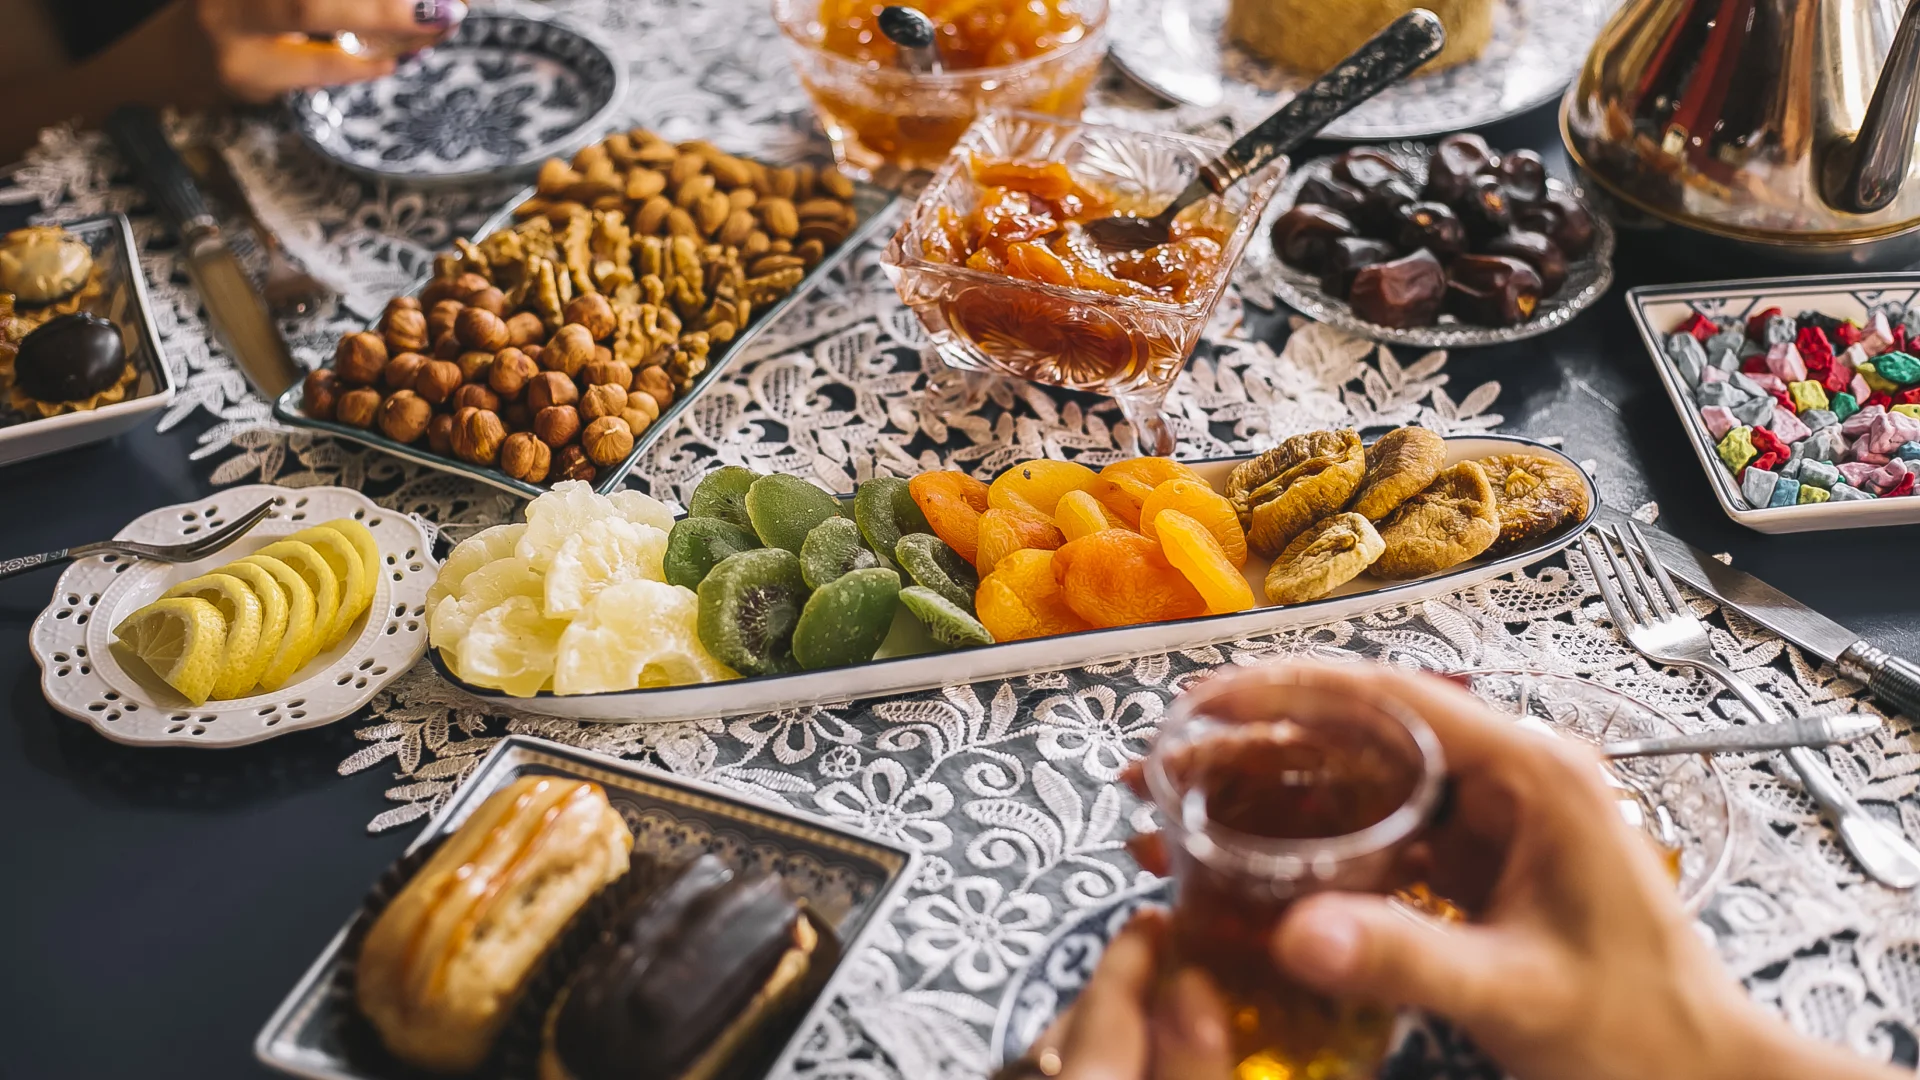 Ramazanda Sağlıklı Beslenme Nasıl Olur? İftar ve Sahur Nasıl Olmalı?